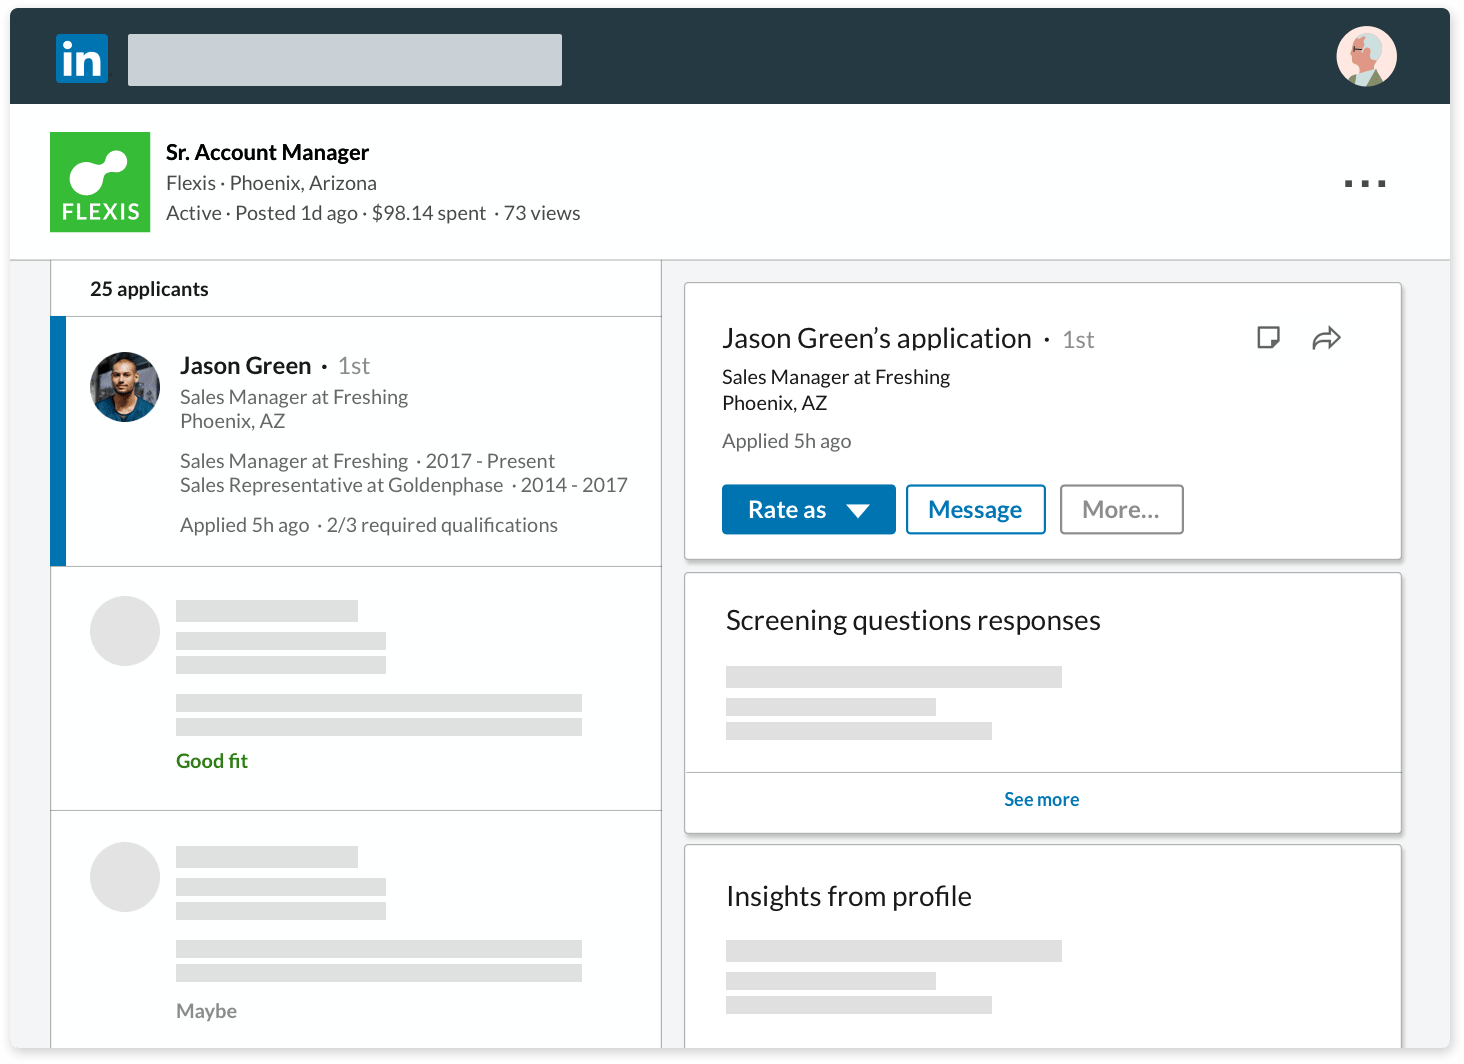 Rút ngắn đáng kể thời gian tuyển dụng với các công cụ hỗ trợ xử lý hồ sơ và sàng lọc ứng viên nhanh chóng từ LinkedIn Recruiter.